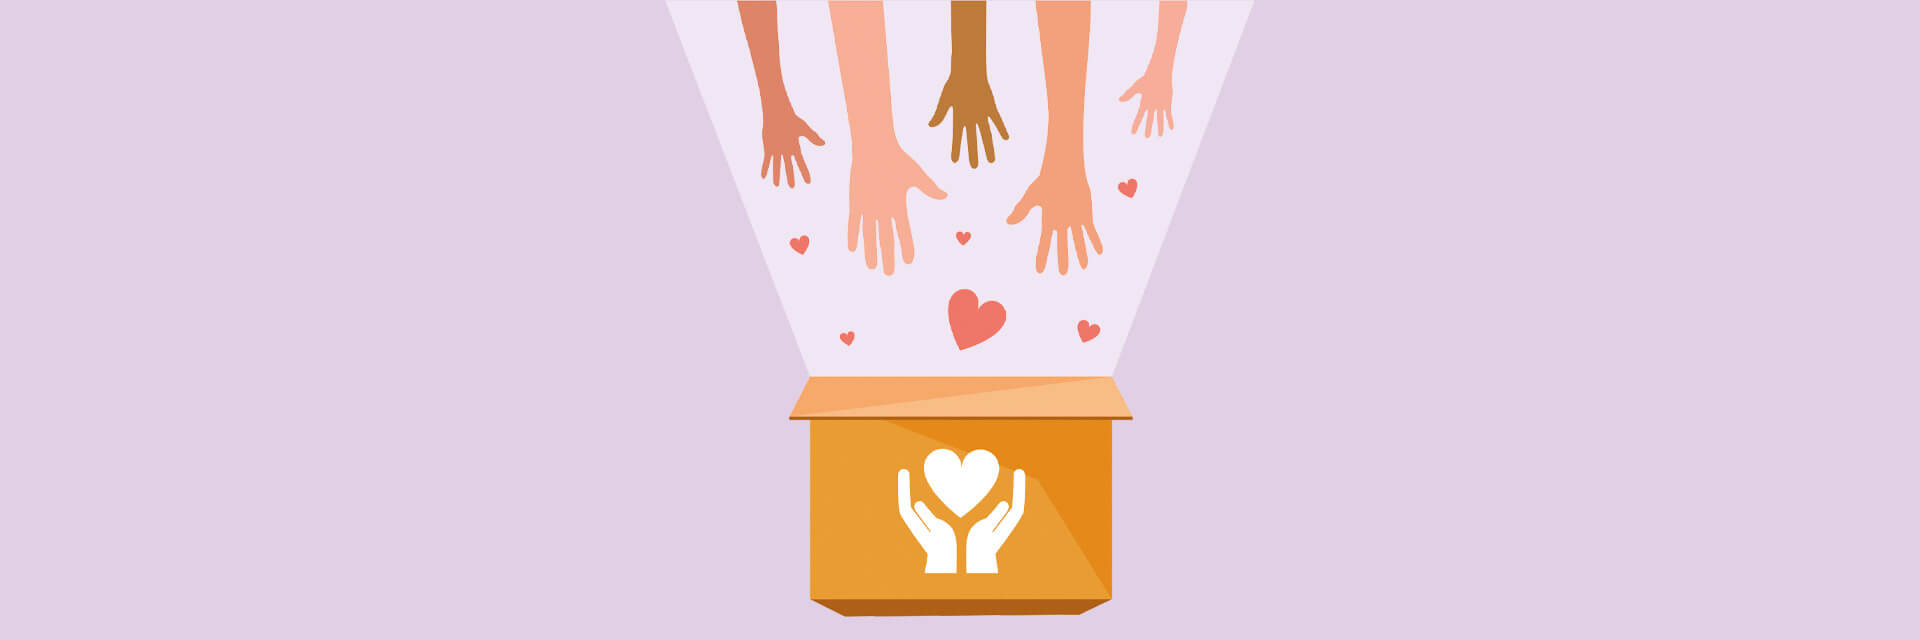 Grafik: Spendenbox mit vielen helfenden Händen und Herzen